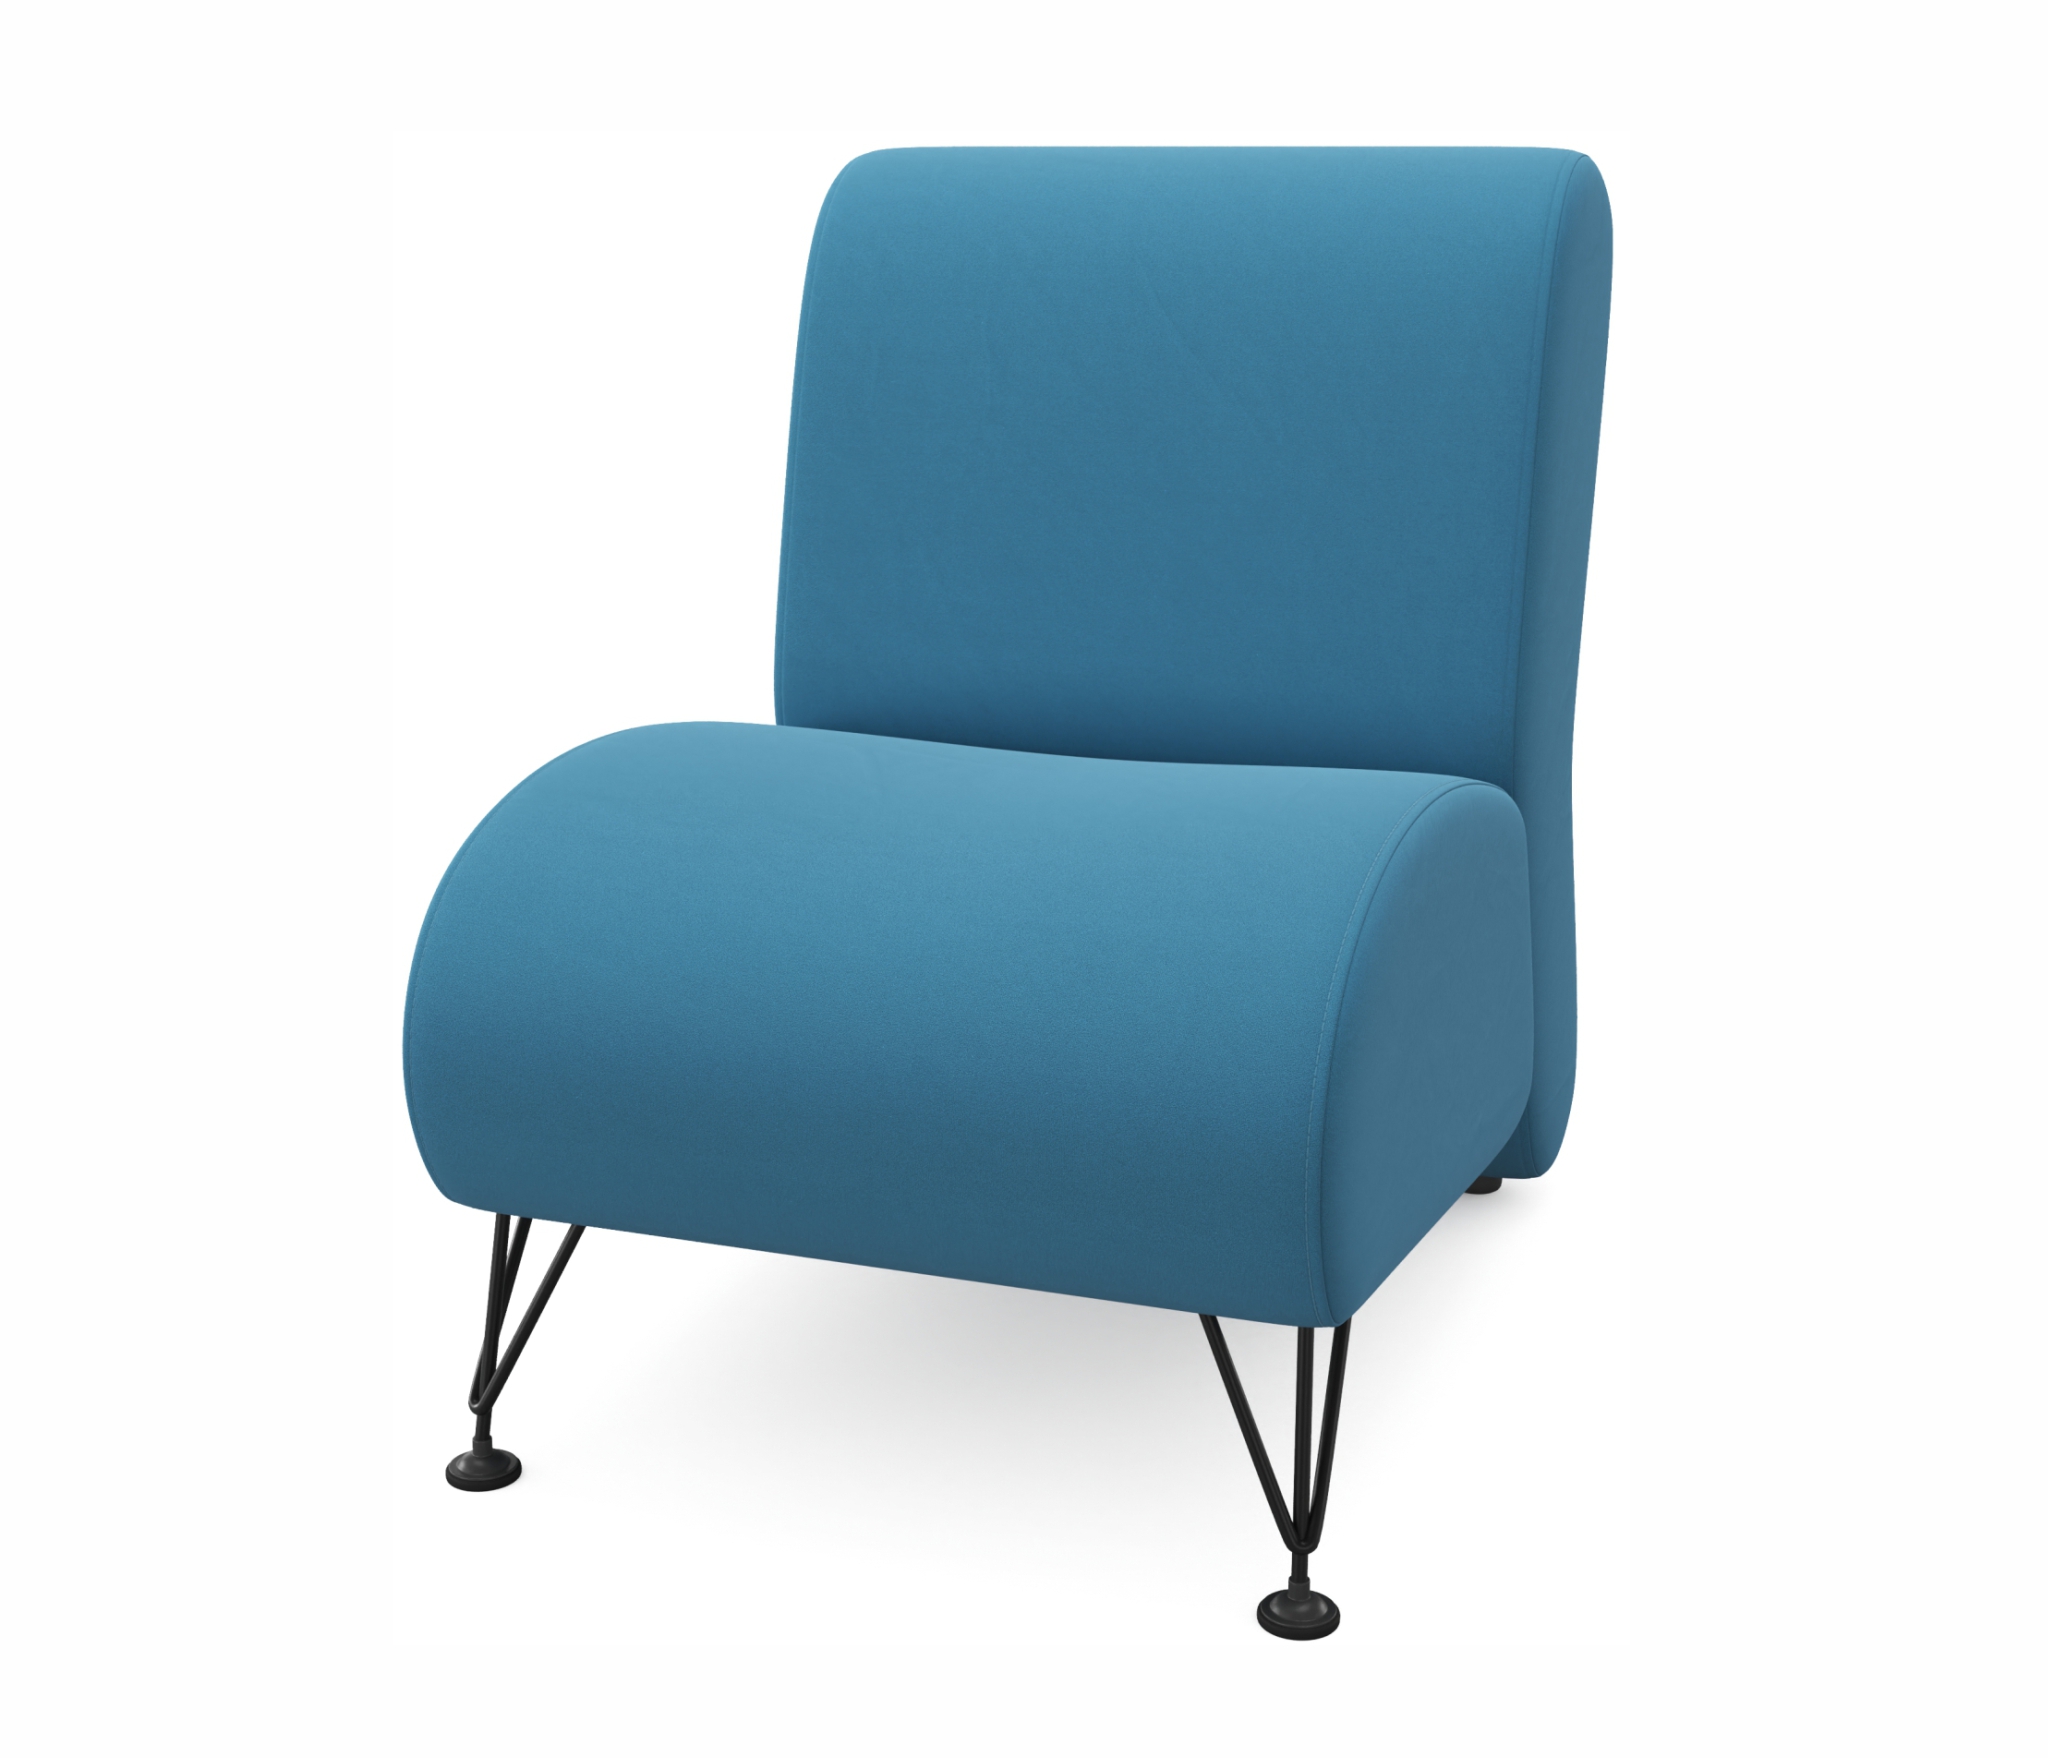 Мягкое дизайнерское кресло Pati синий